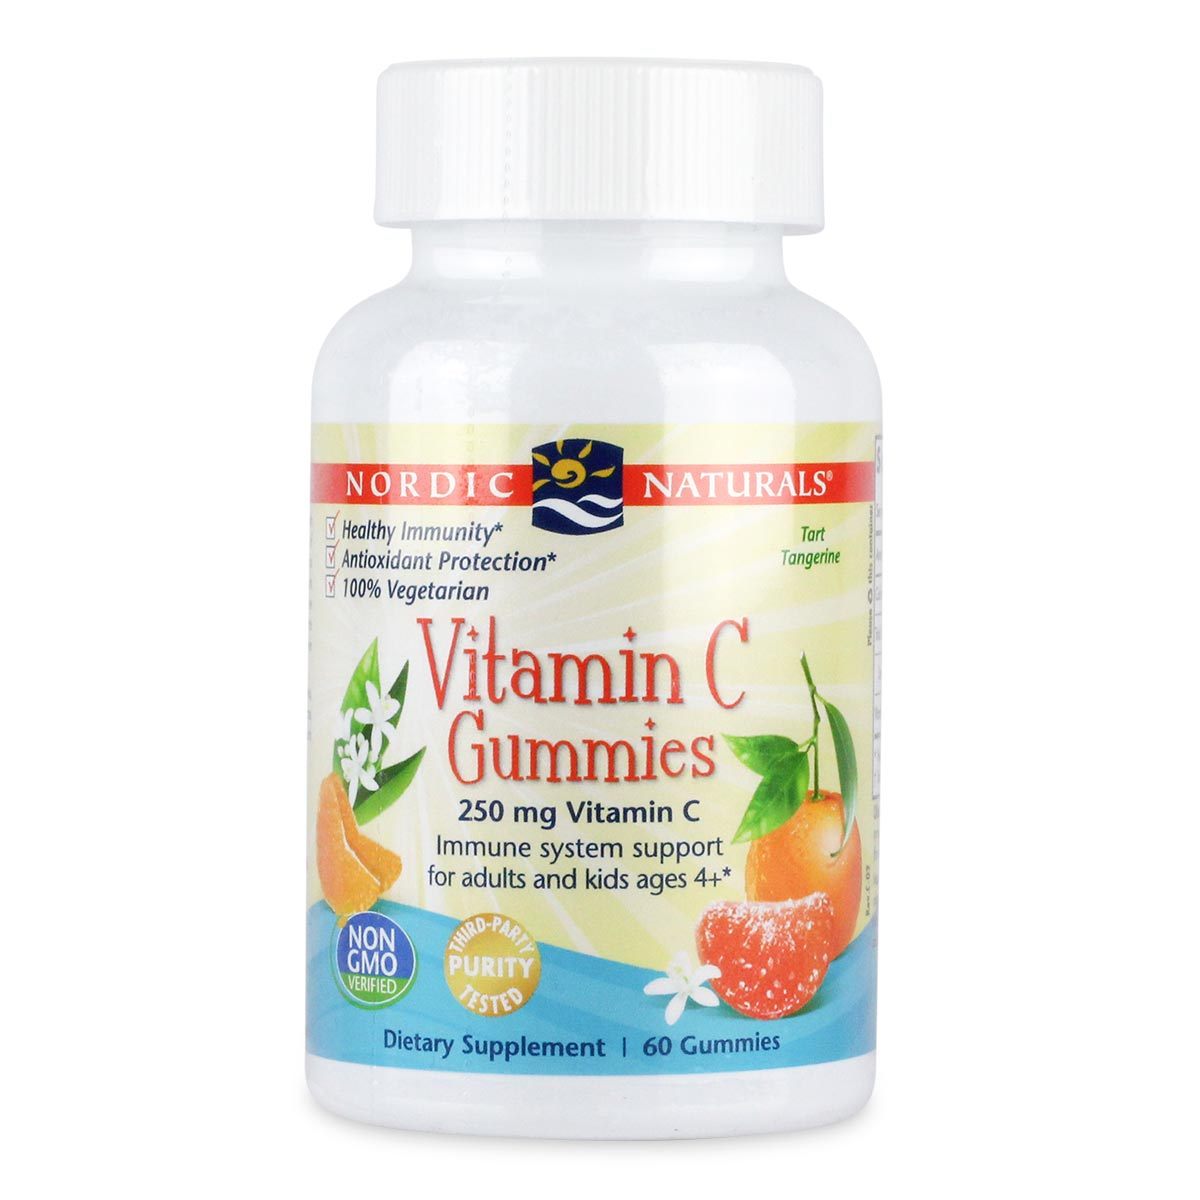 Primary image of Vitamin C Gummies